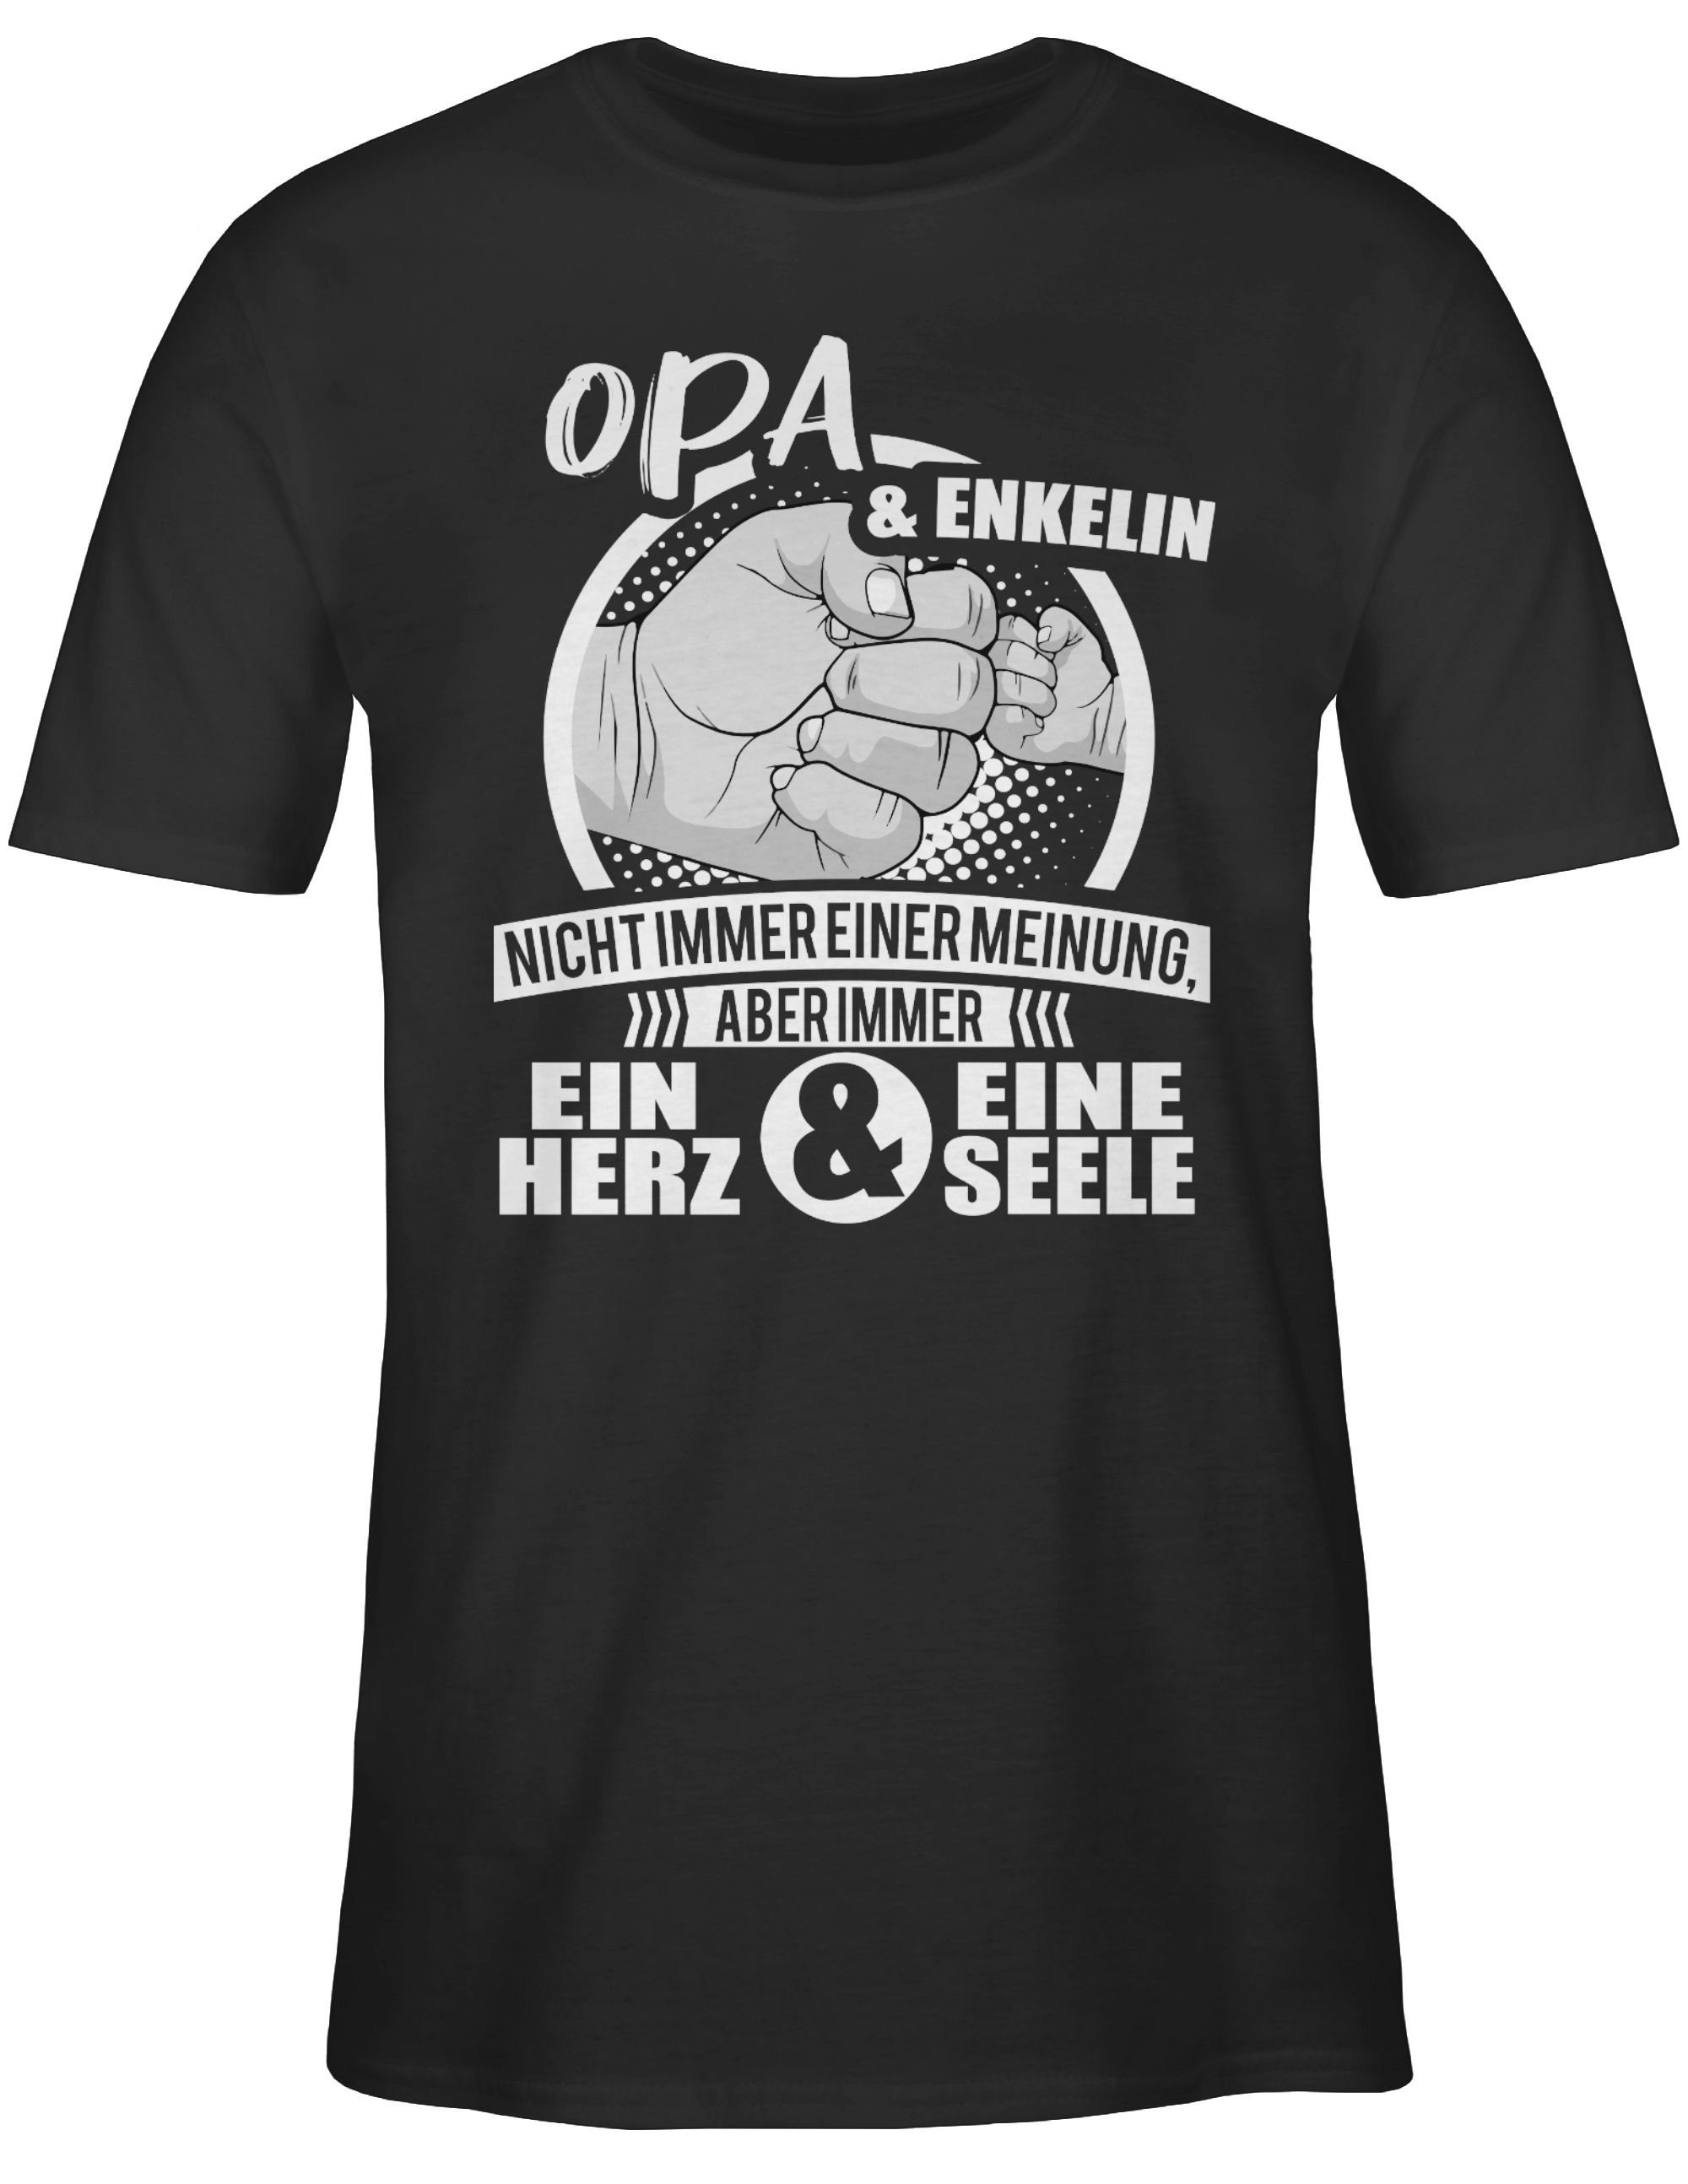 Schwarz Herz Opa & Geschenke 1 Opa Immer & Enkelin ein Seele Shirtracer eine T-Shirt